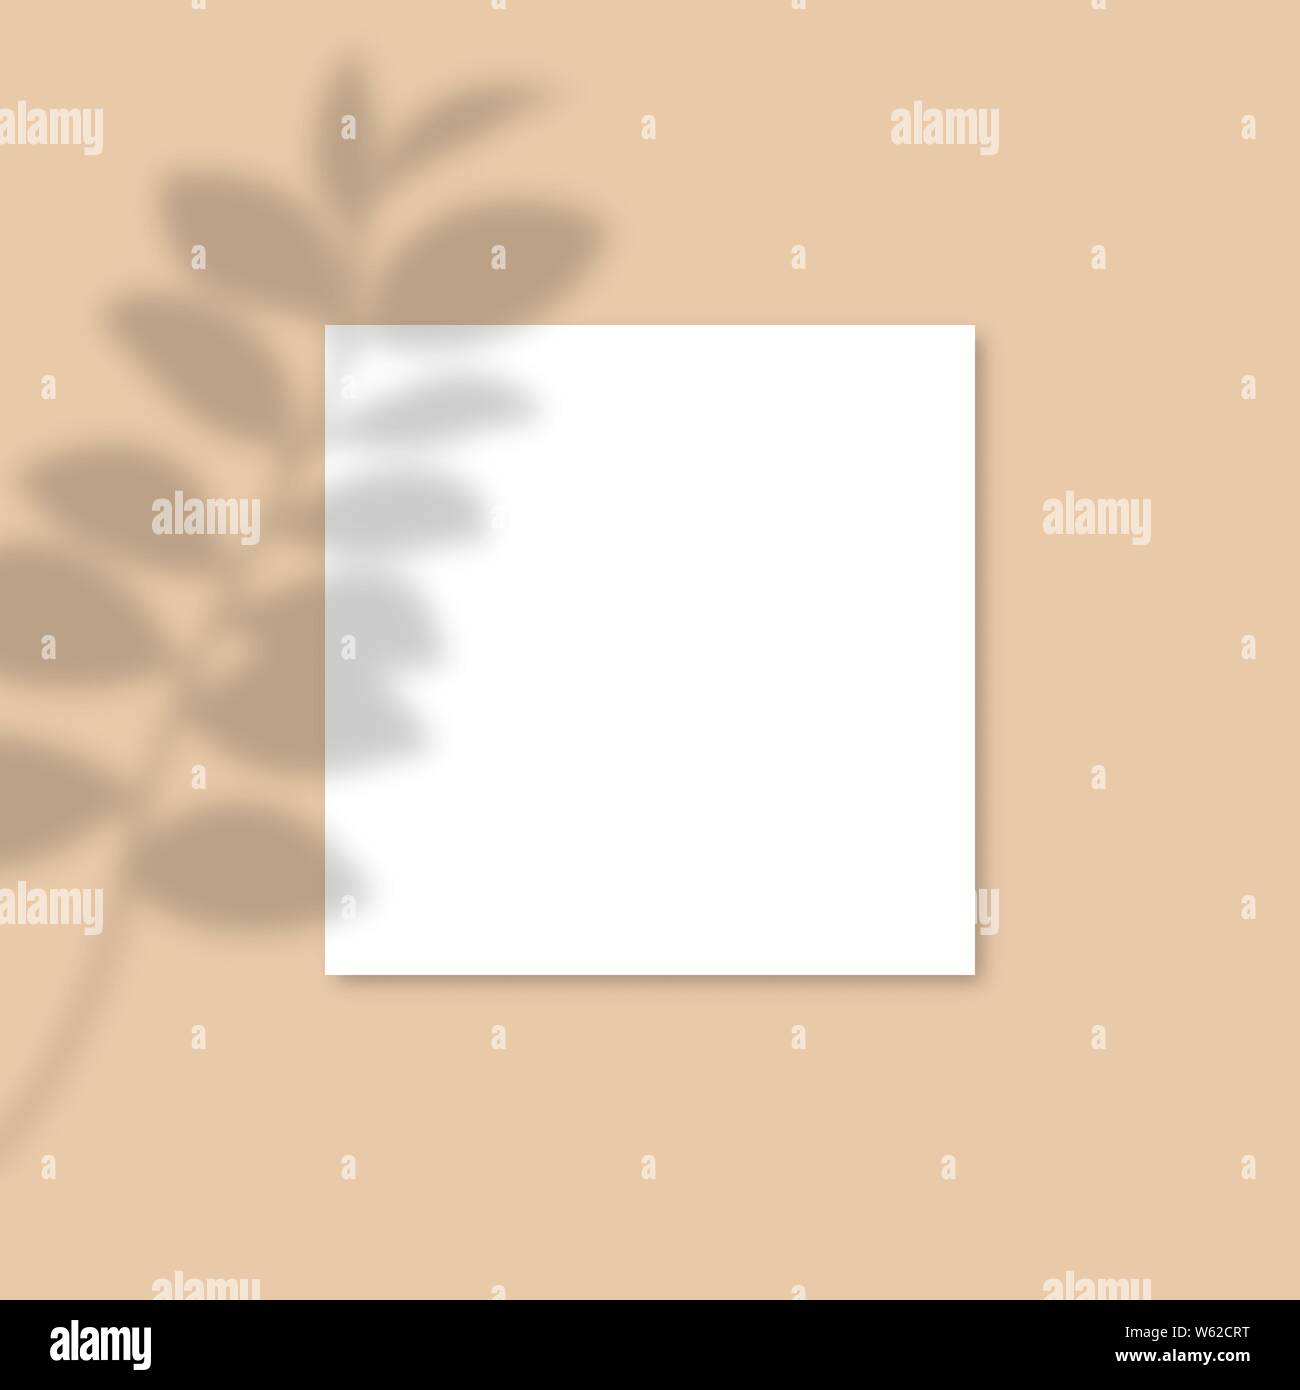 Maquette papier carré avec des ombres réalistes superpositions feuille. Ombre d'un vecteur de plantes tropicales. Flyer, Affiche, Modèle vierge, médias sociaux poster, logo modèle dans un style à la mode Illustration de Vecteur